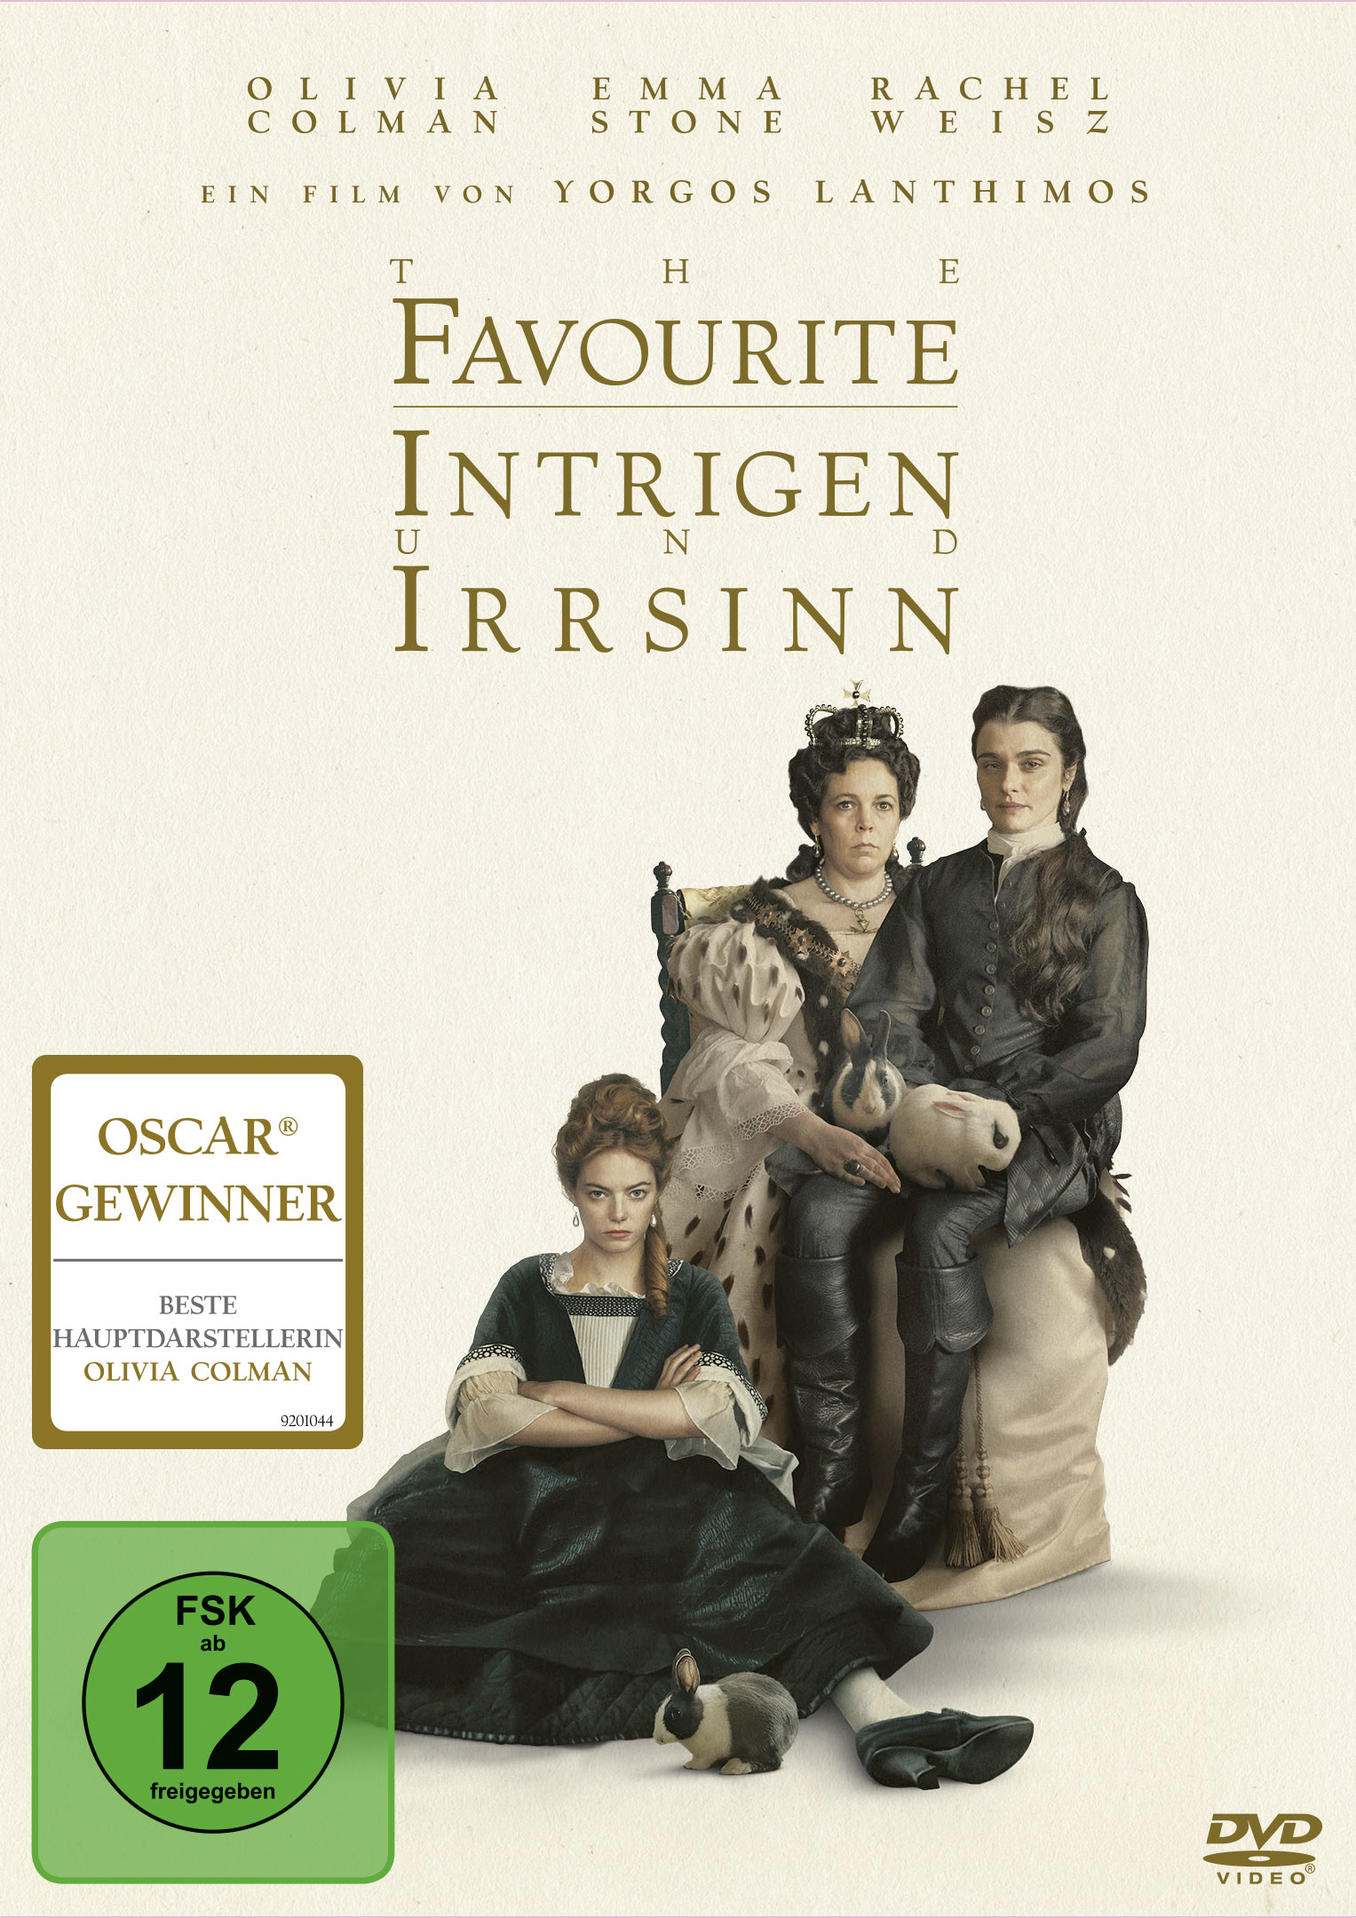 und DVD The Irrsinn Intrigen - Favourite